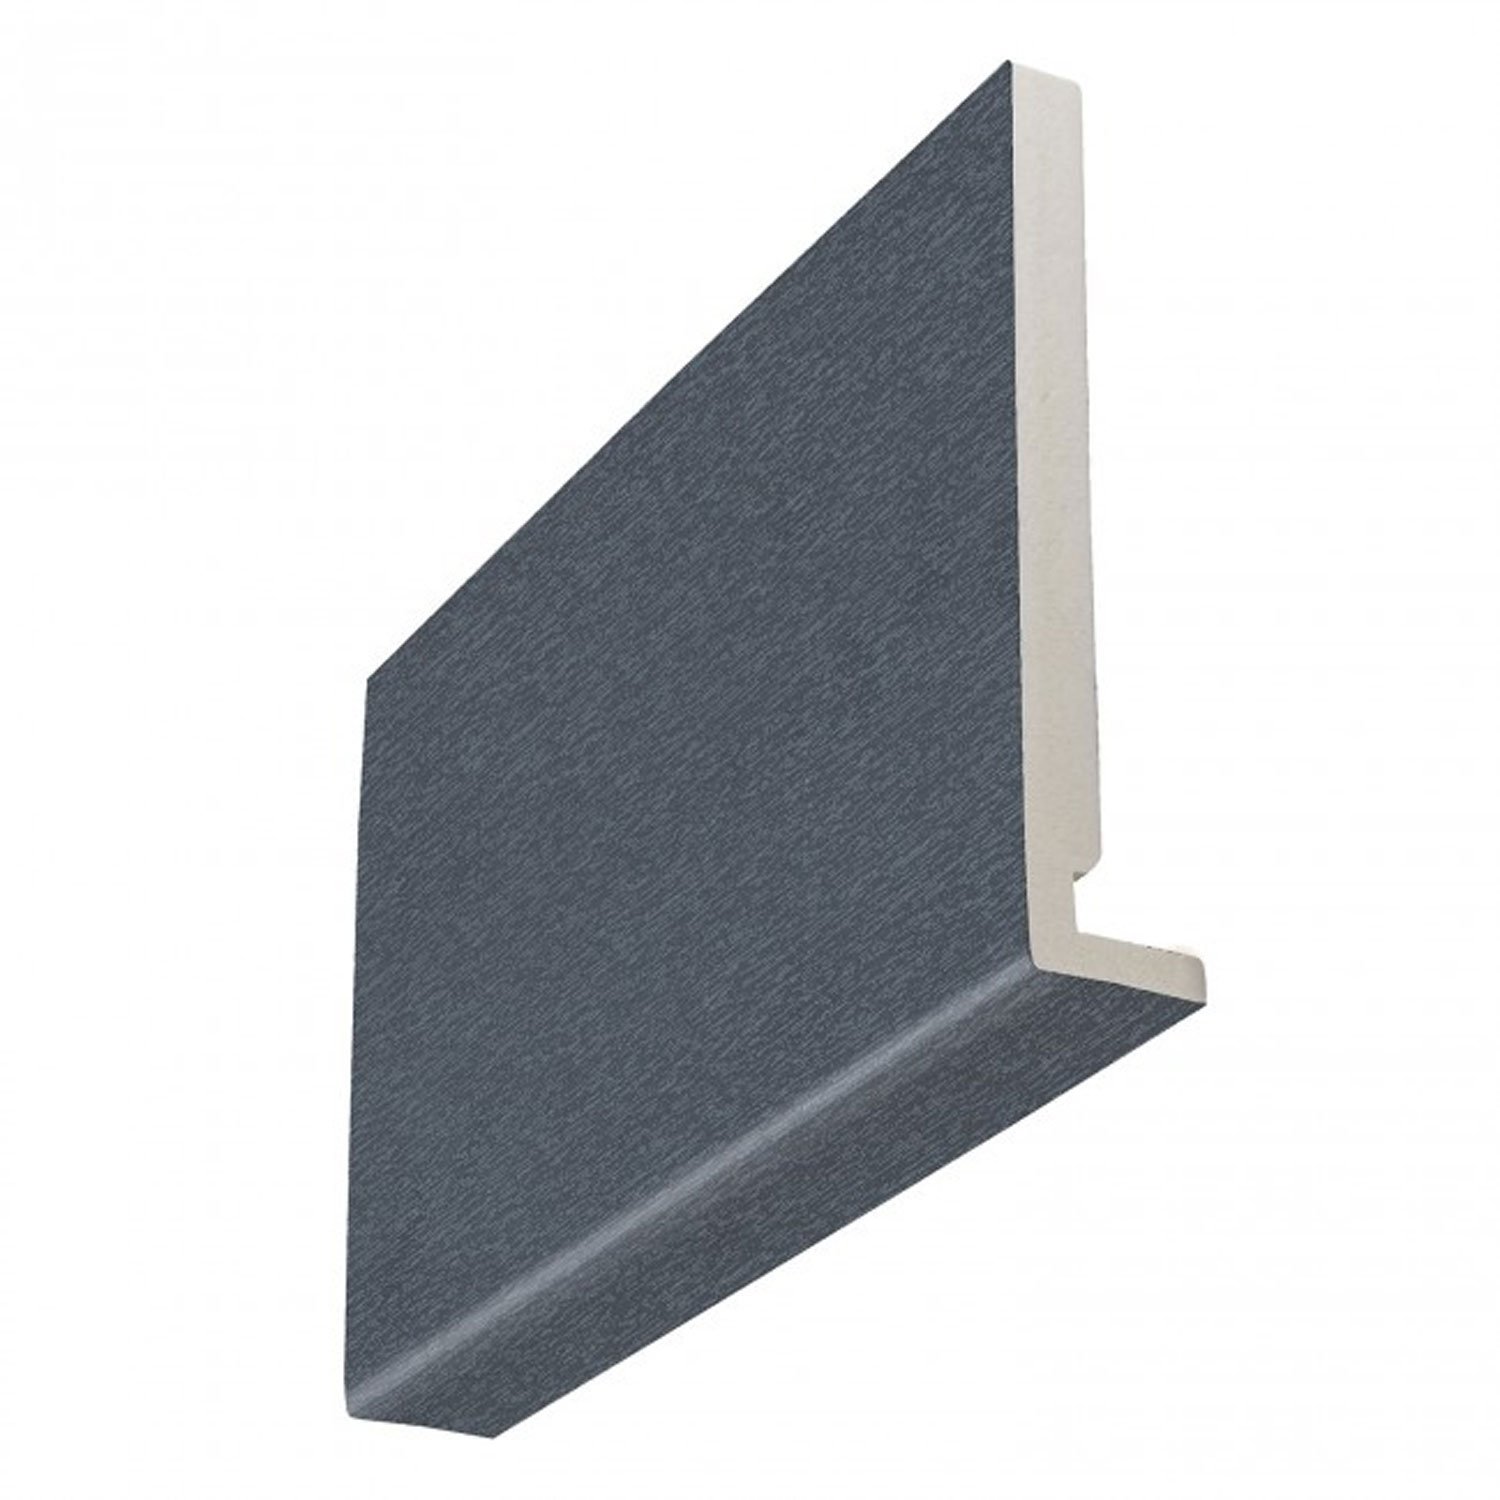 16mm Square Anthracite Grey Woodgrain Fascia Boards